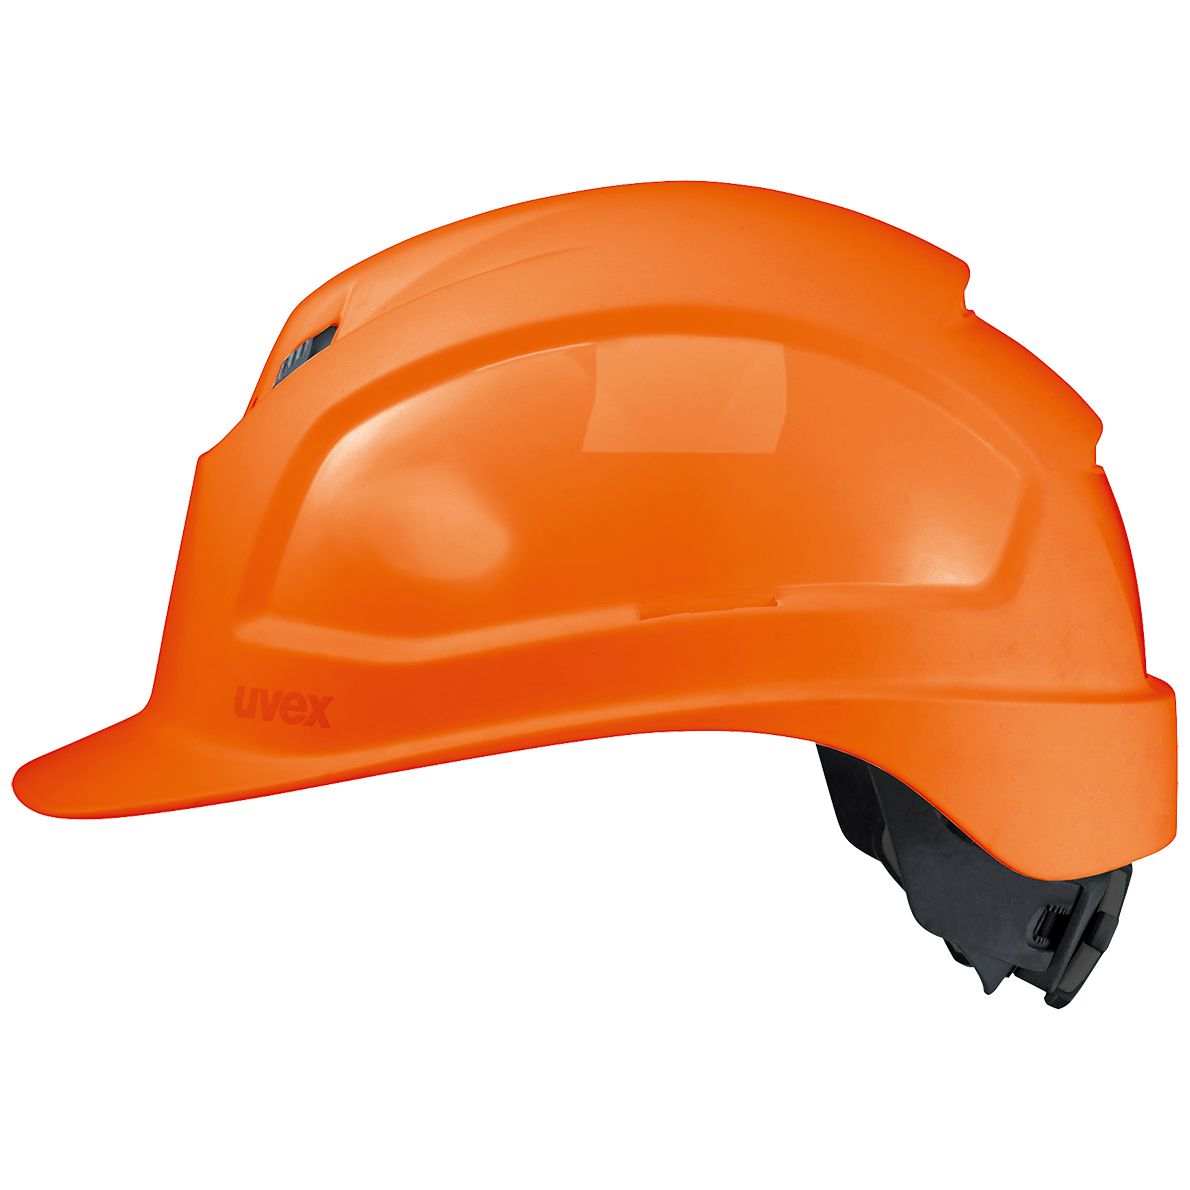 uvex pheos IES Bauhelm - Robuster Schutzhelm für Bau & Industrie - EN 397 - Brillenhalter & Drehverschluss - Orange